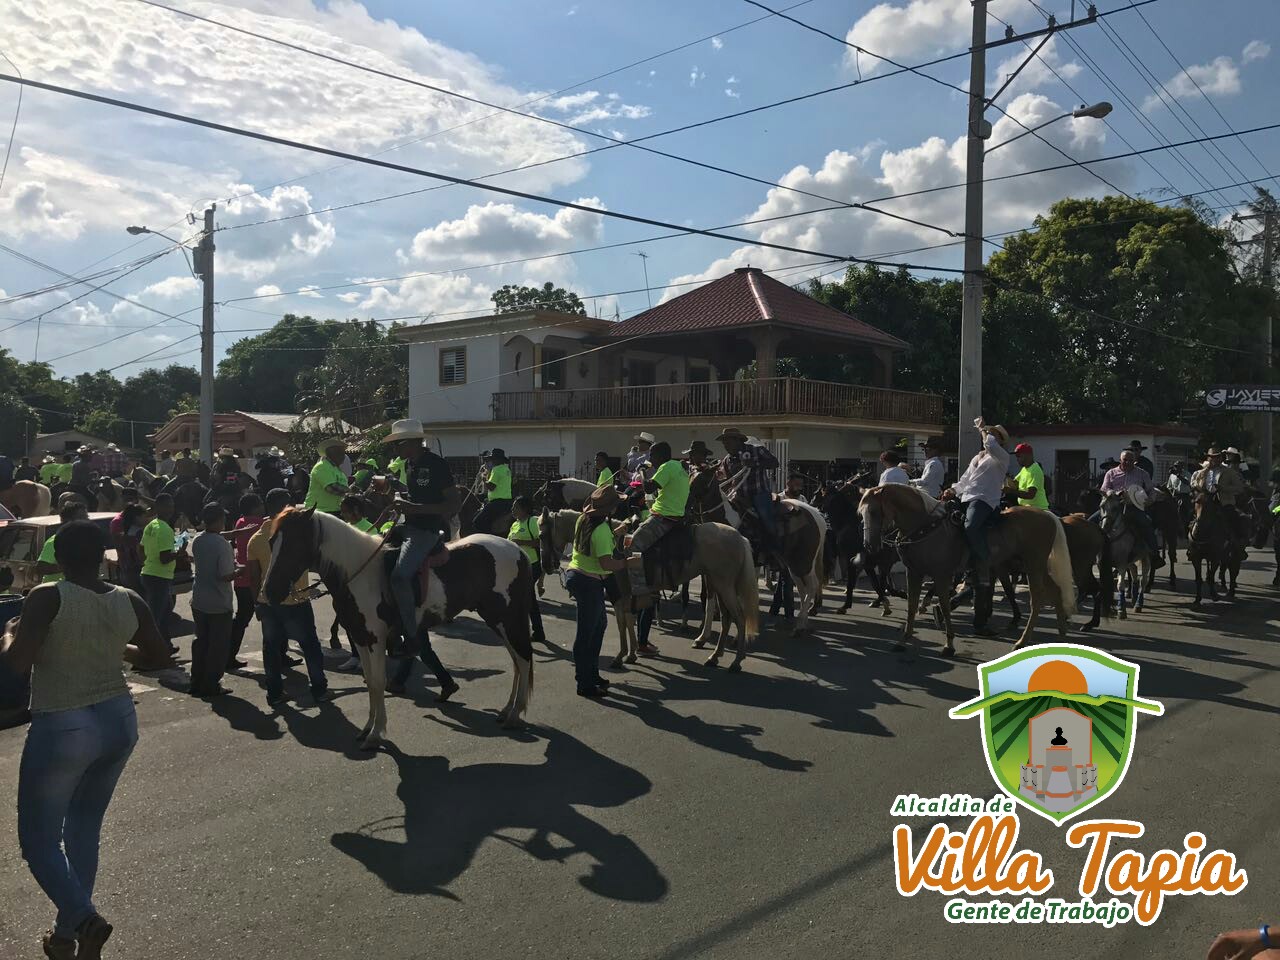  A pasos de alegría celebran Cabalgata Ruta de las Mariposas en la provincia Hermanas Mirabal